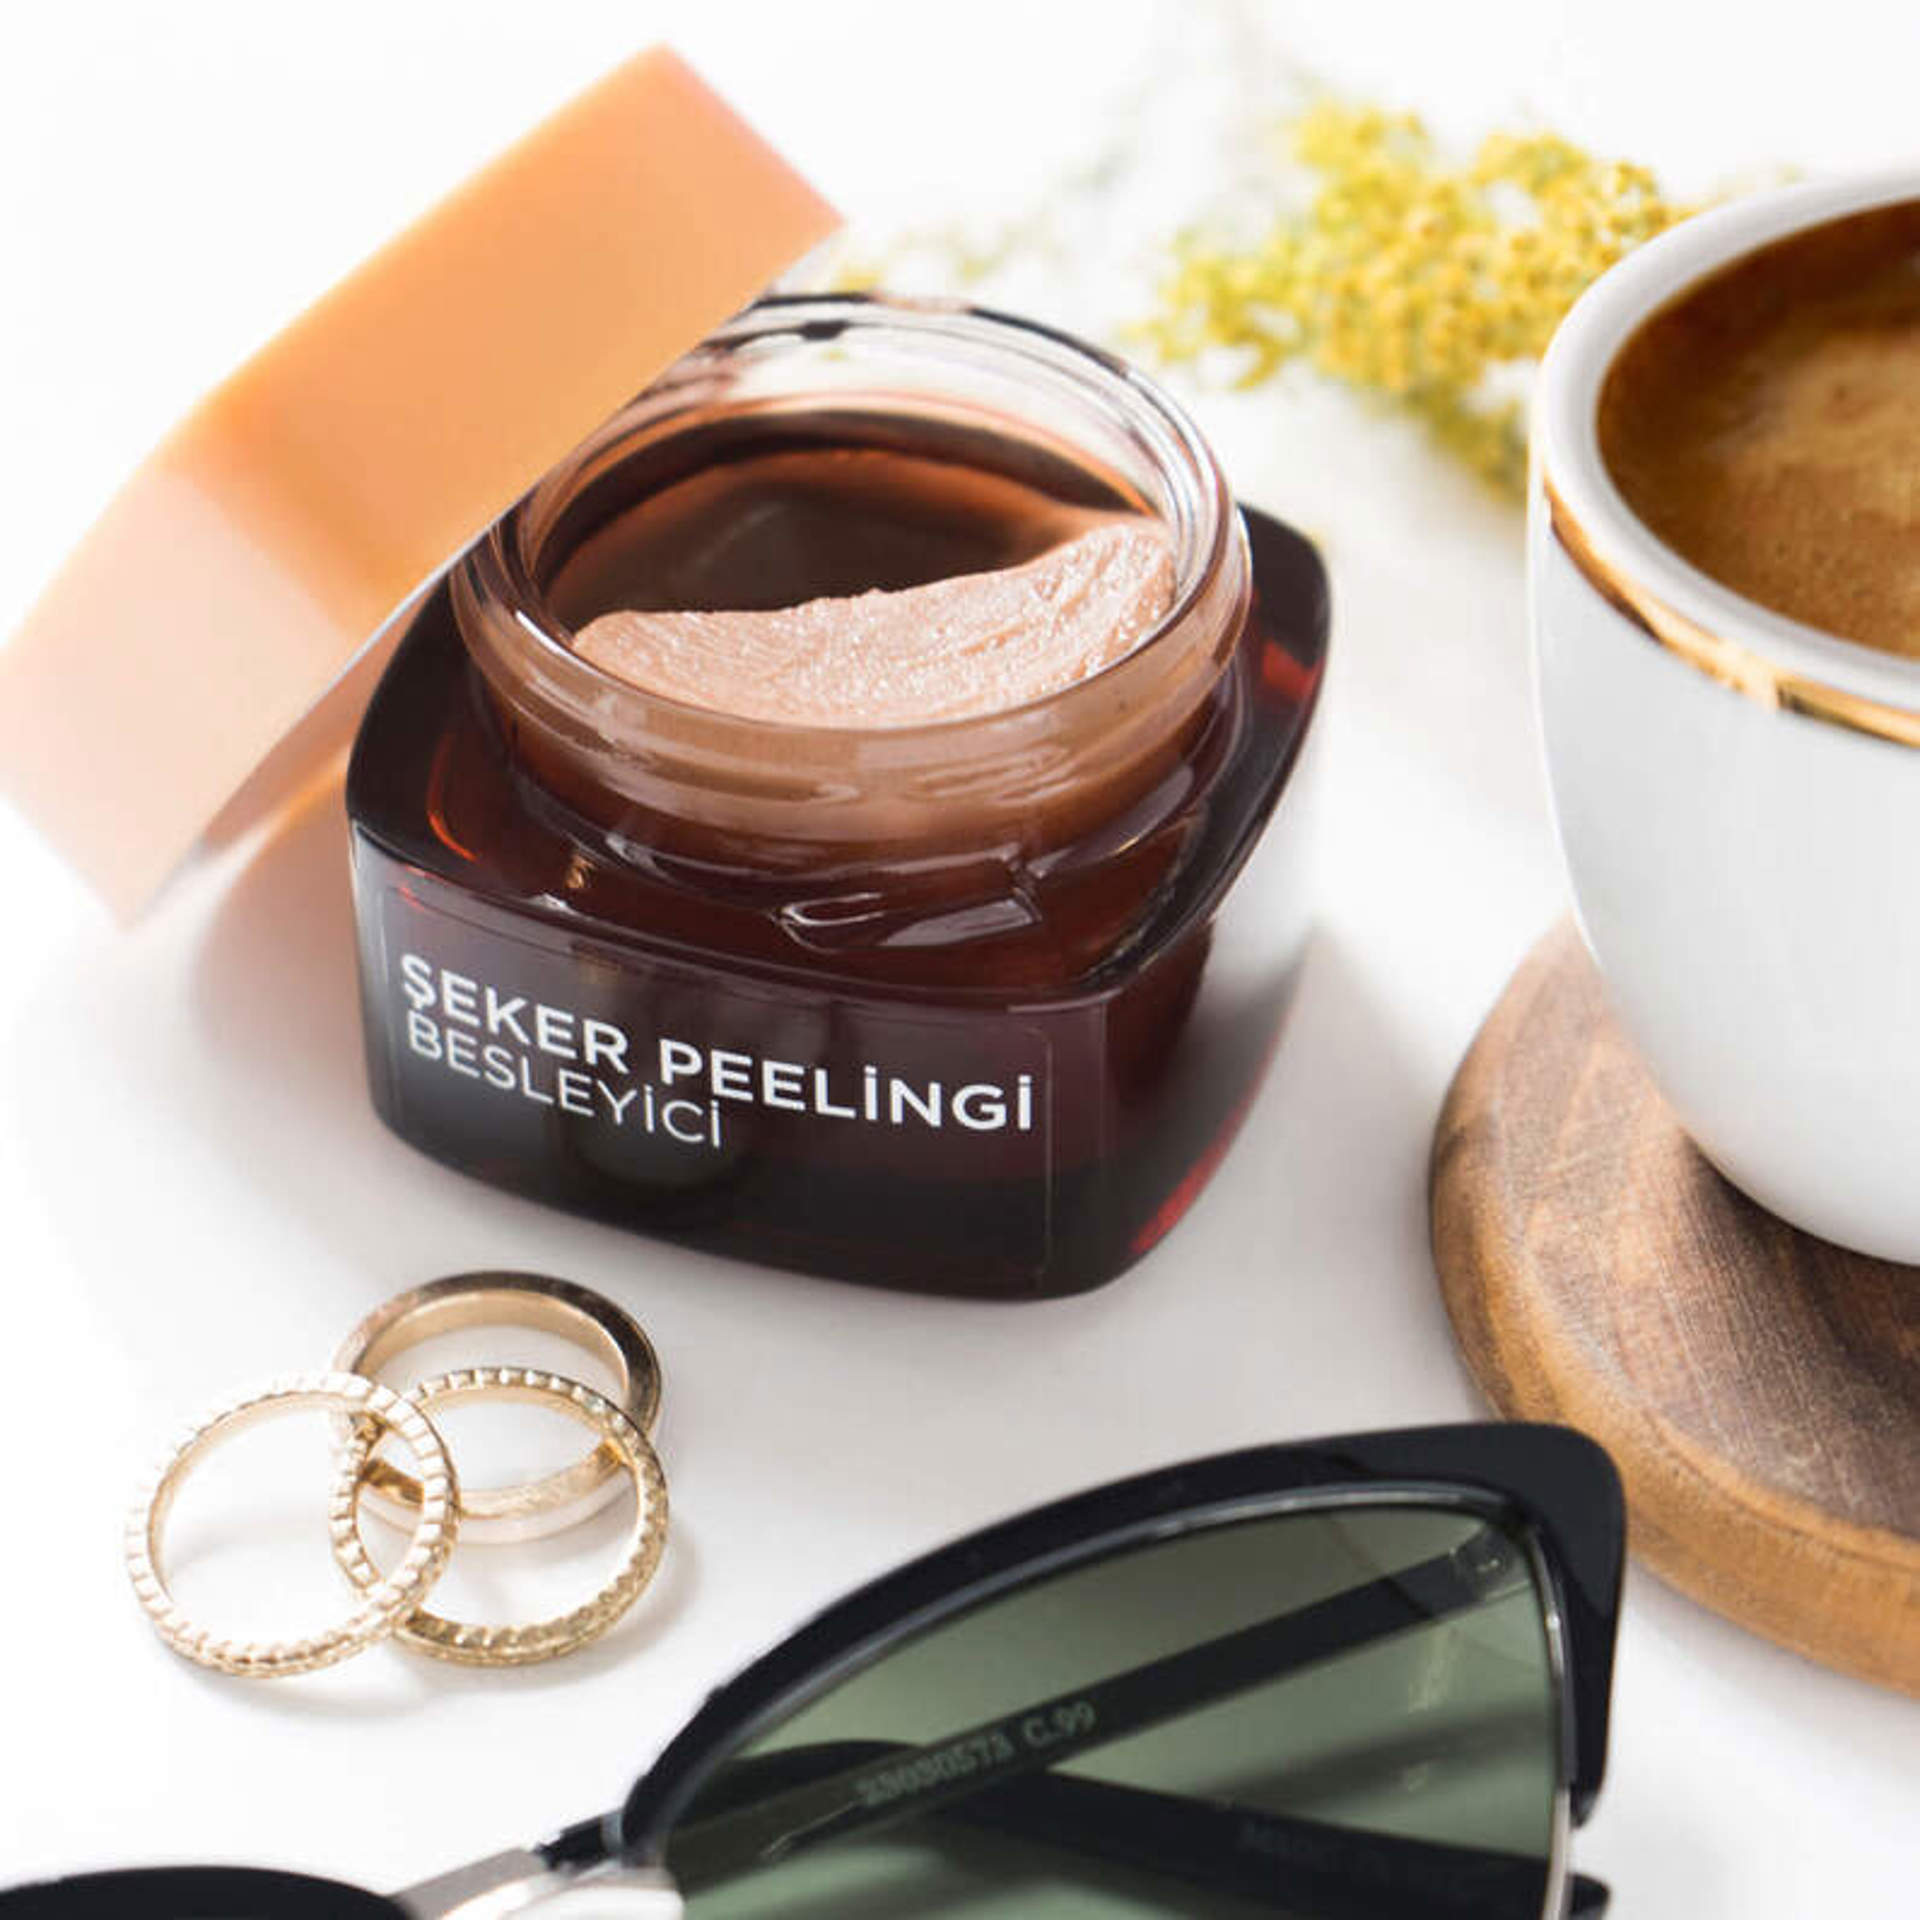 L’Oréal Paris Şeker Peelingi Besleyici – Kakao & Hindistan Cevizi Yağı